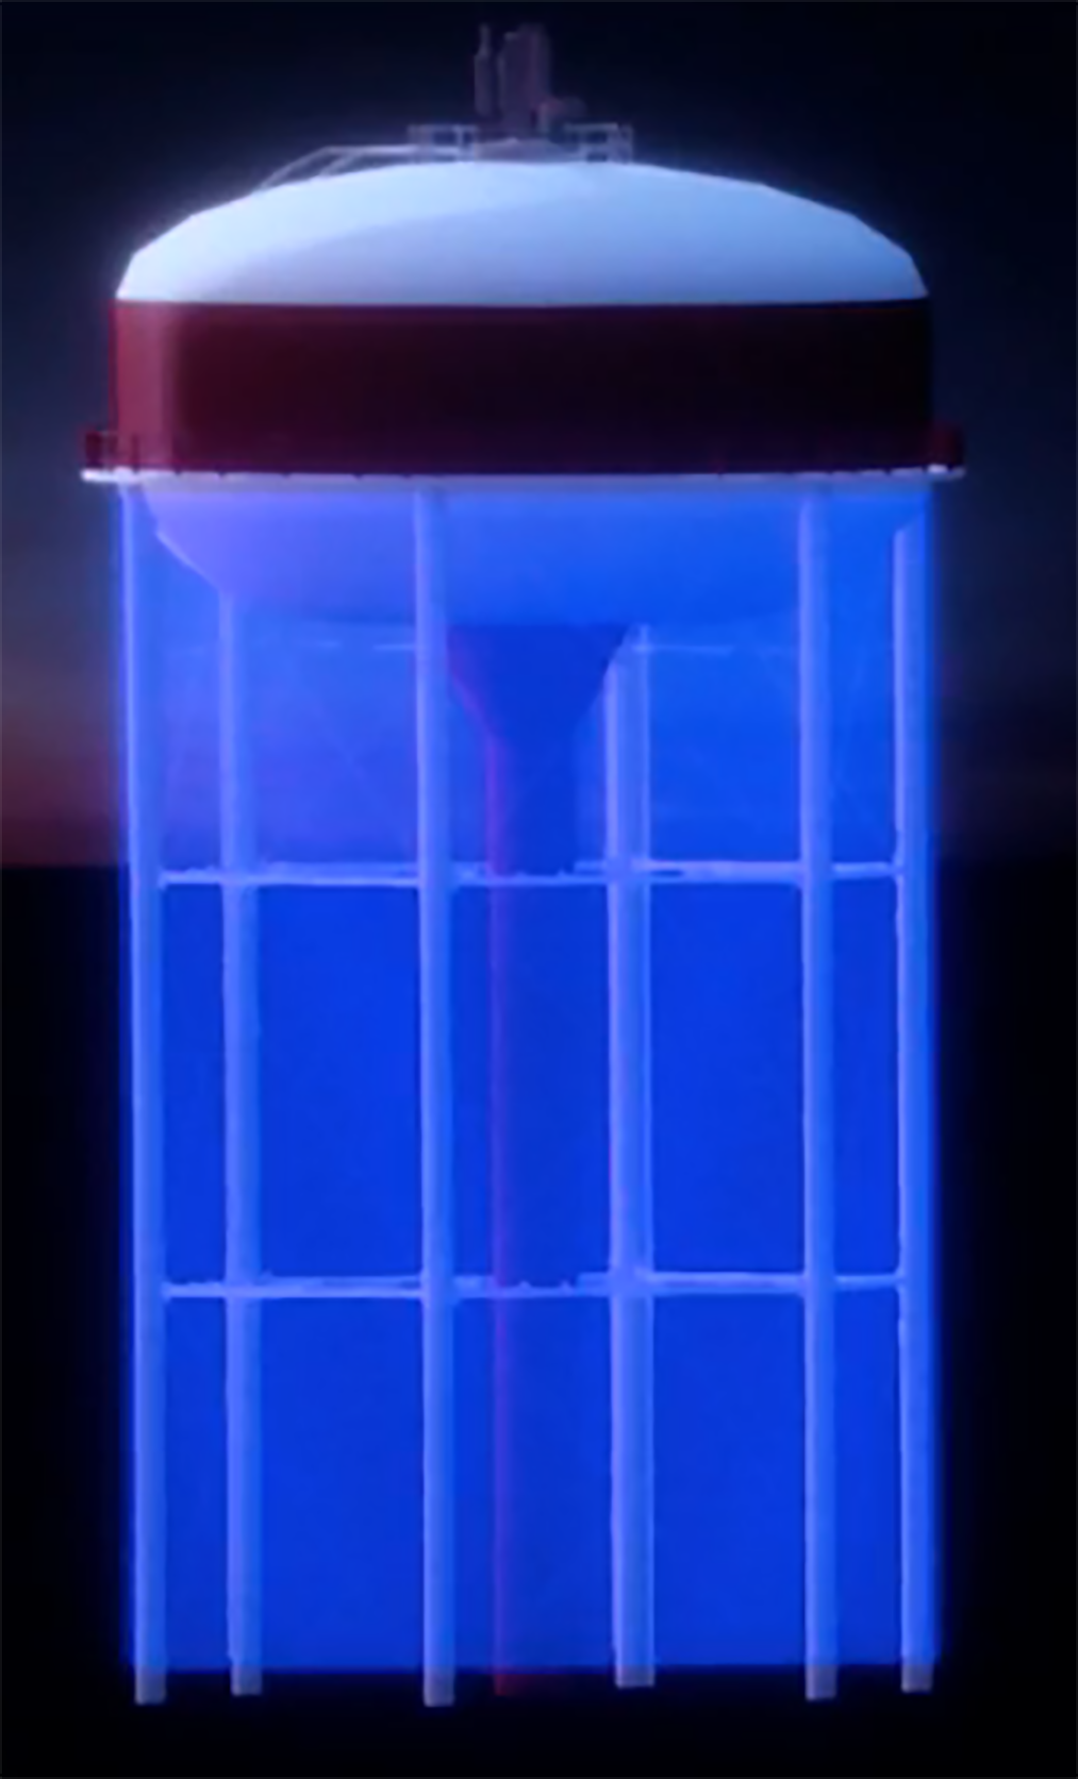 CIC COM 0112 Water tower light show